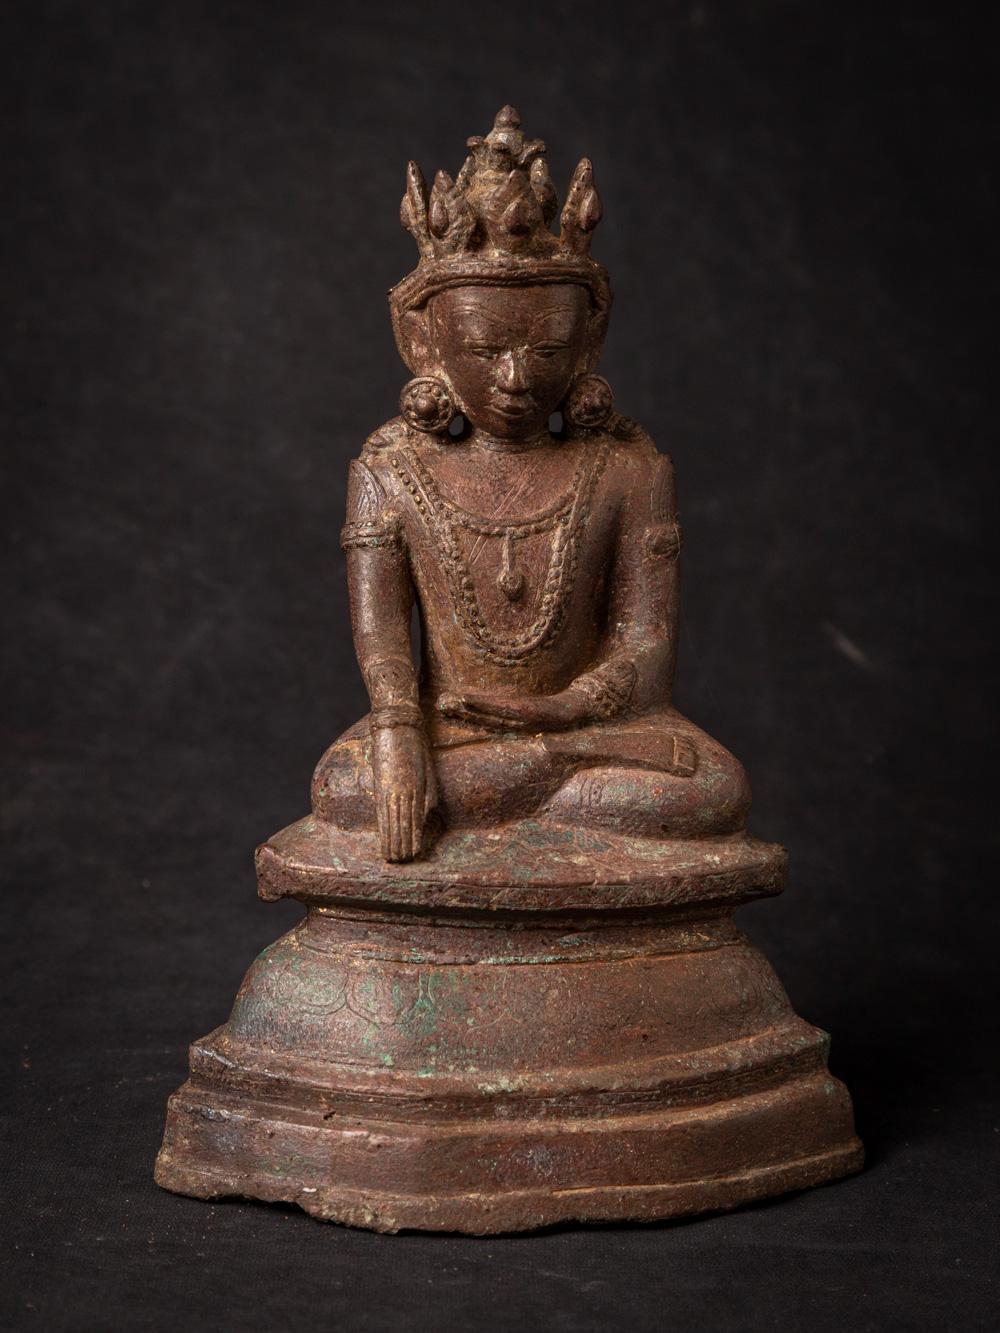 MATERIAL : Bronze
22,8 cm hoch
15,5 cm breit und 10 cm tief
Arakan-Stil
Bhumisparsha Mudra
14-15. Jahrhundert
Gewicht: 1,66 kg
Mit Ursprung in Birma
Nr: 3814-11